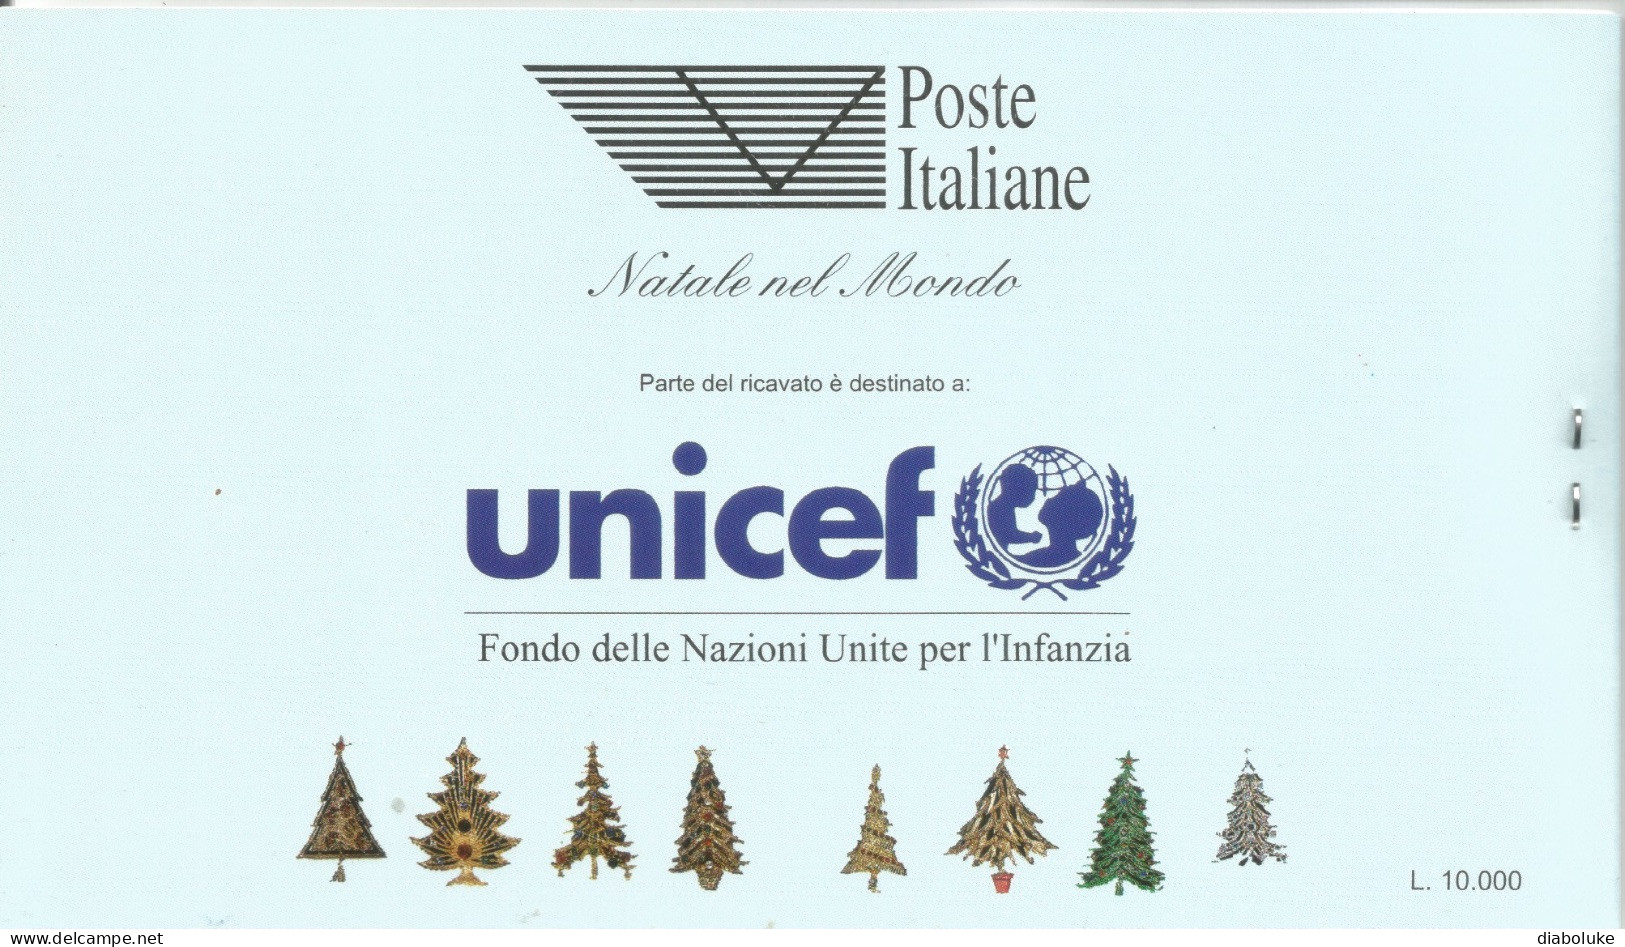 (REPUBBLICA ITALIANA) 1995, NATALE NEL MONDO - Libretto Nuovo, Copertina Celeste - Carnets